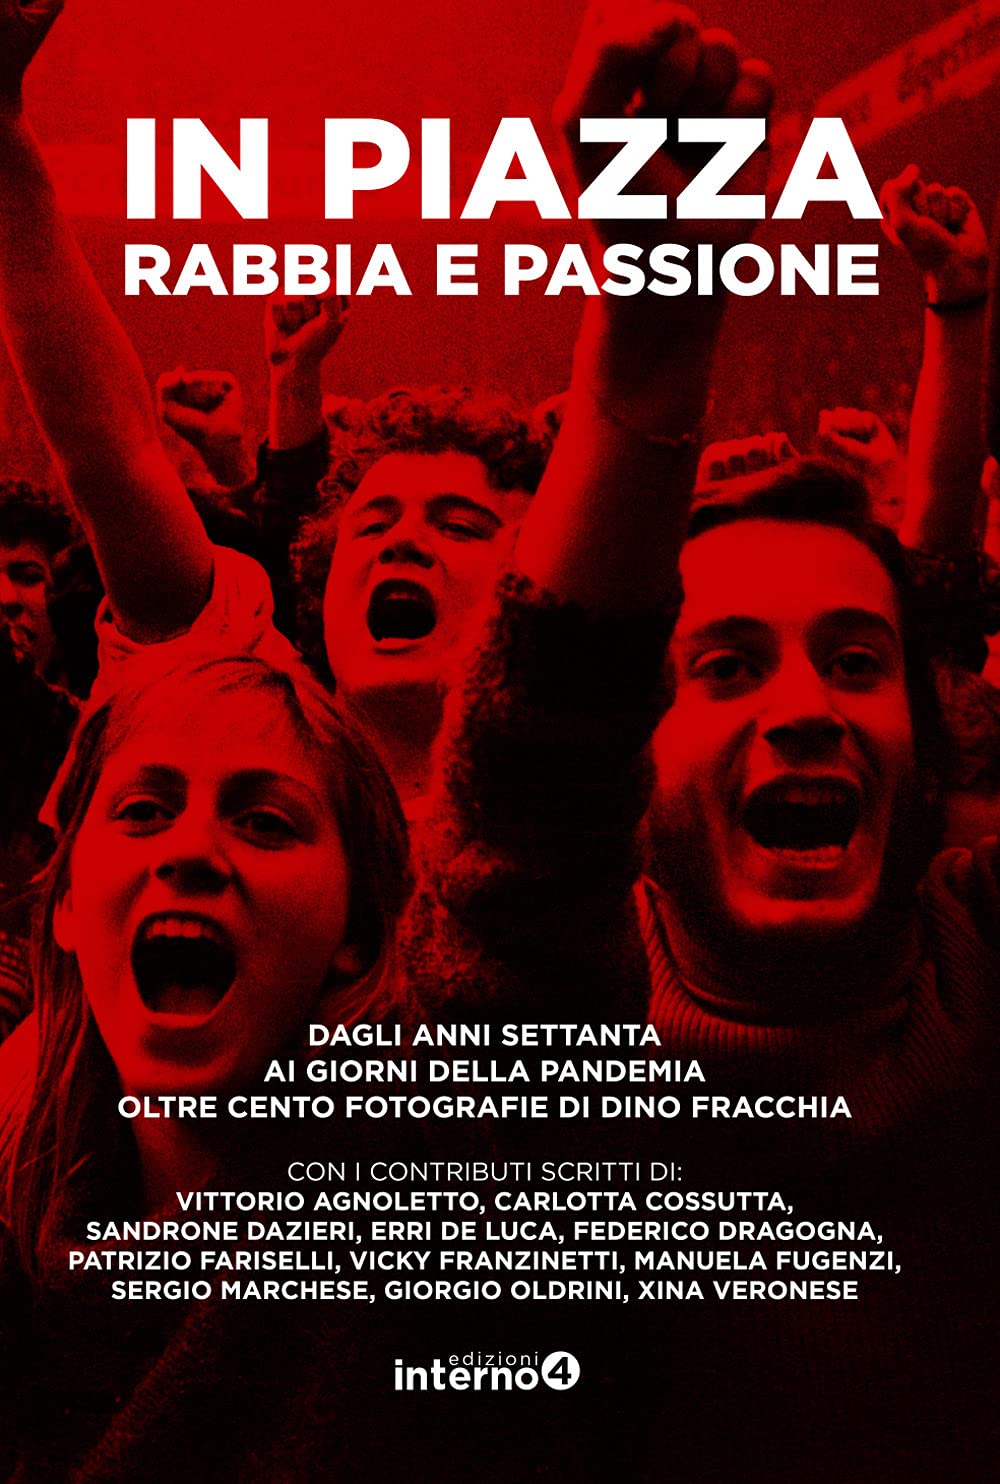 Dino Fracchia – In piazza. Rabbia e passione (Interno4, Rimini Milano 2021)